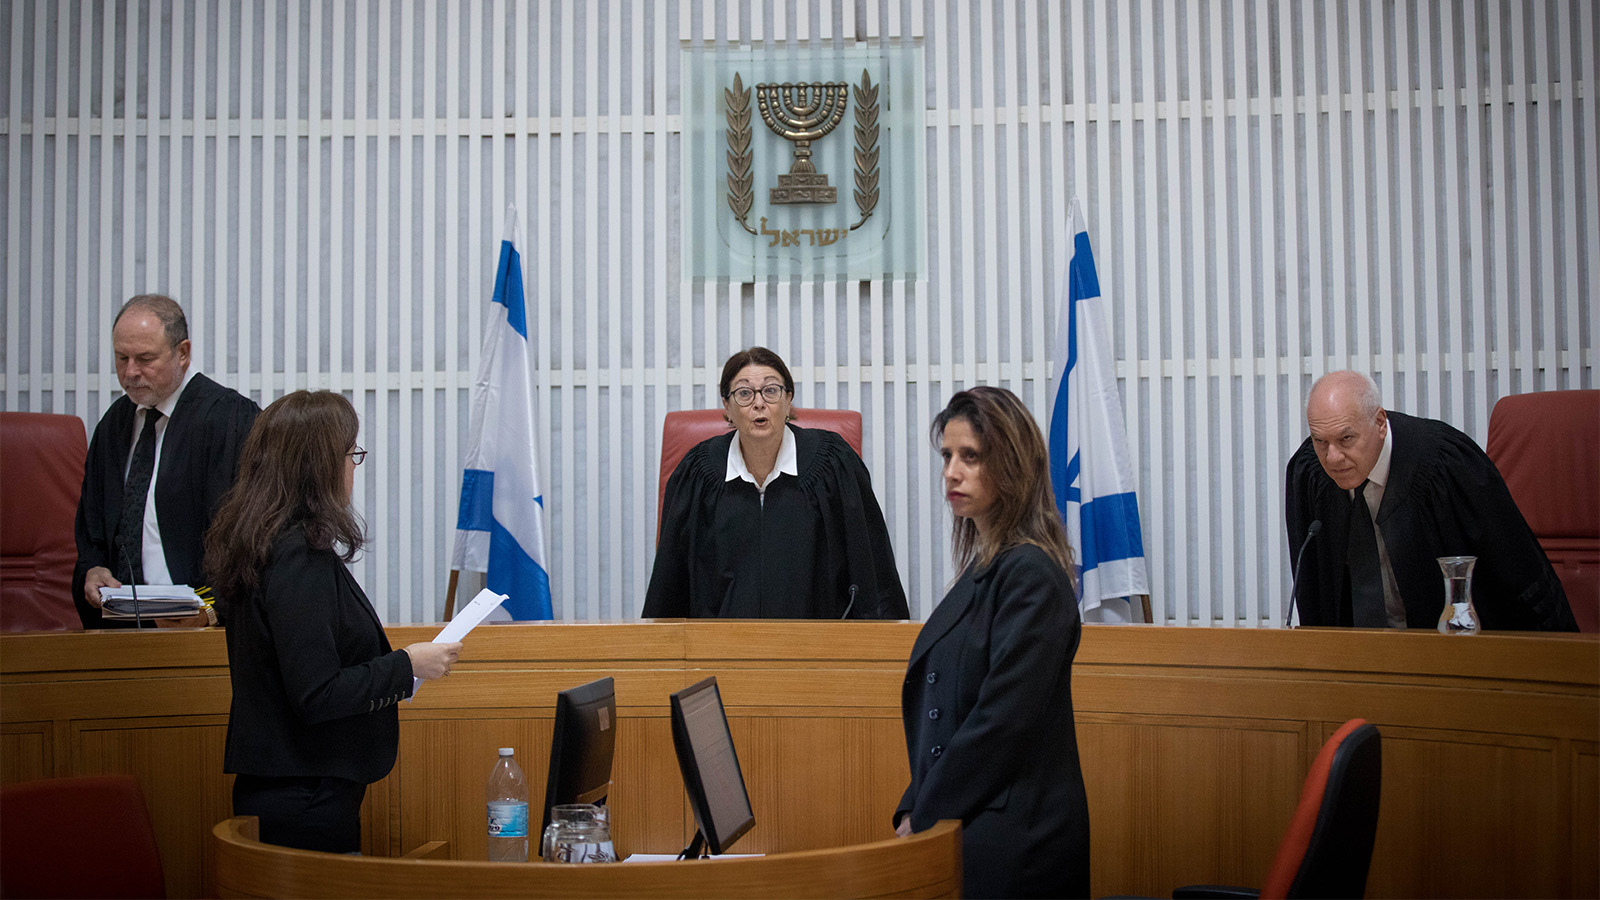 שופטי בית המשפט העליון אסתר חיות, יורם דנציגר ועוזי פוגלמן בדיון היום (צילום: יונתן זינדל/ פלאש 90)